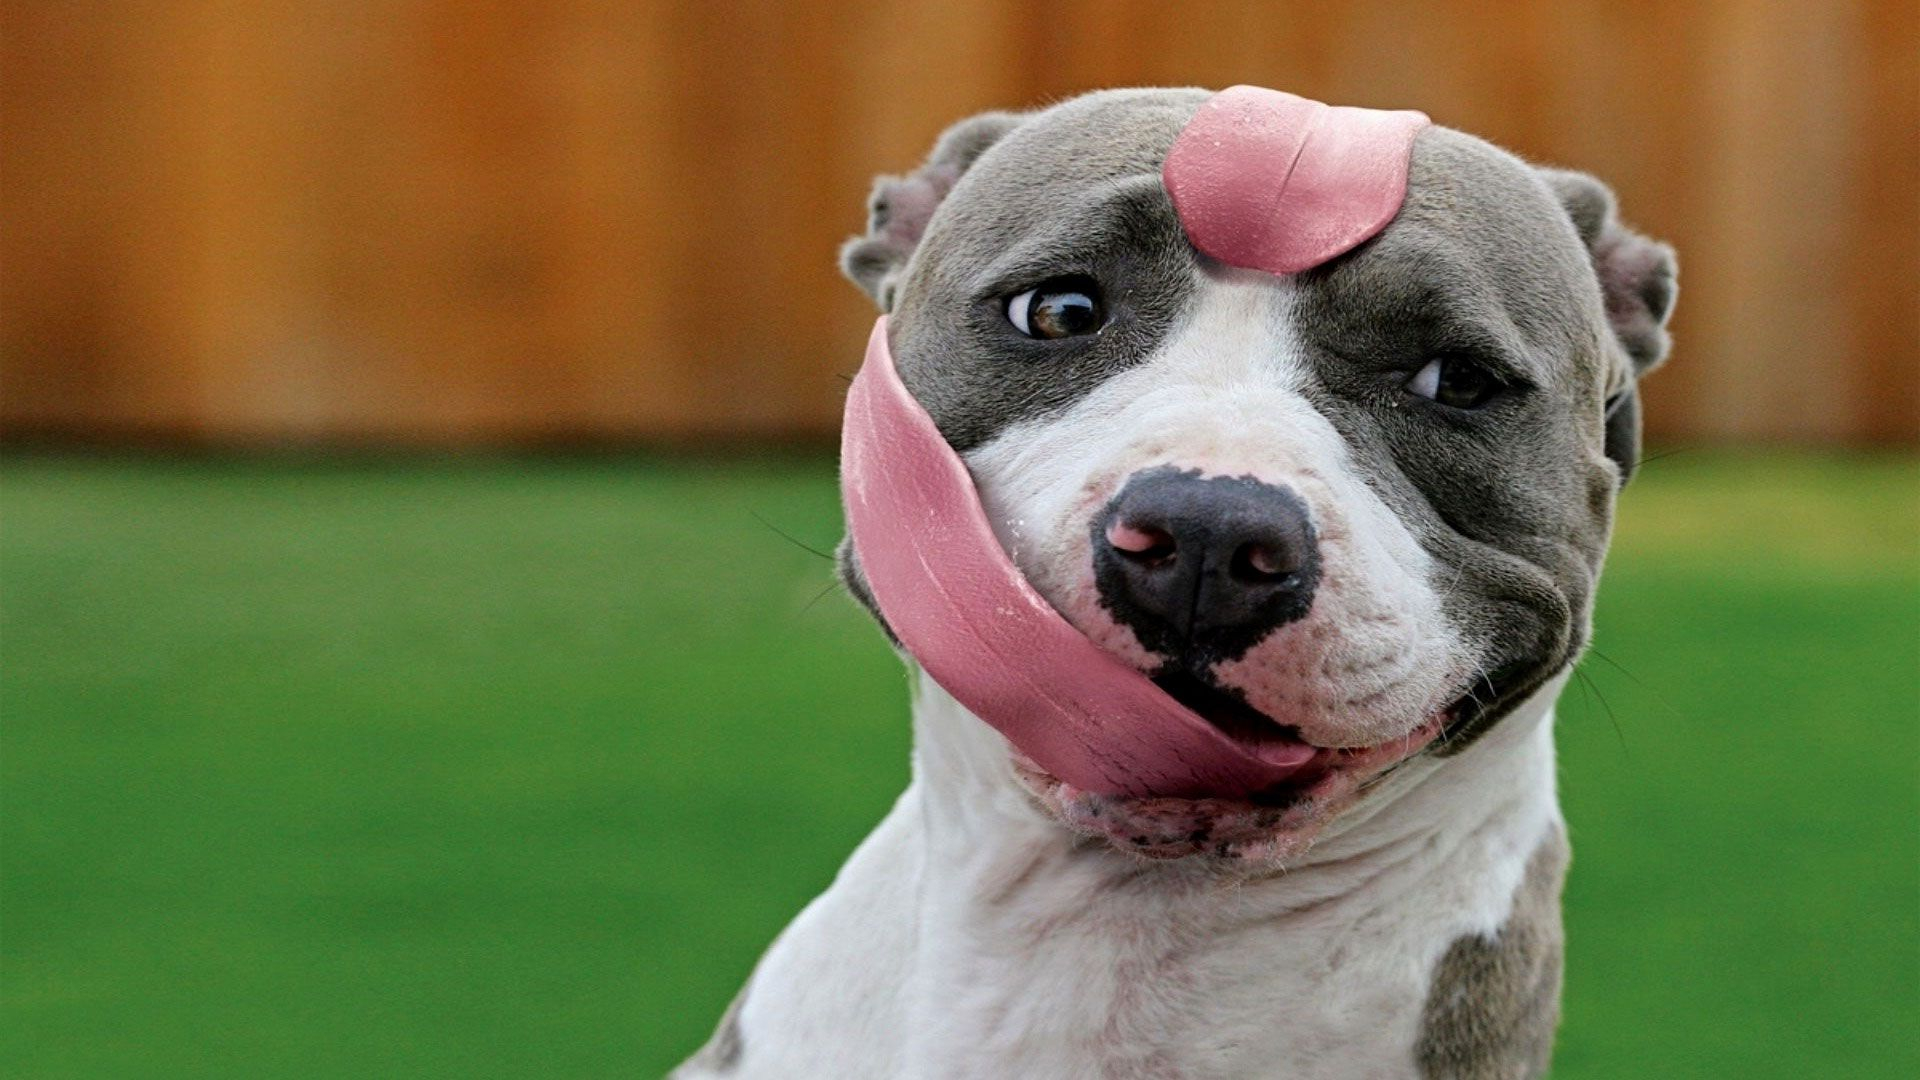 1920x1080 Long tongue | Pitbulls, Animal humor dog, Pitbull dog